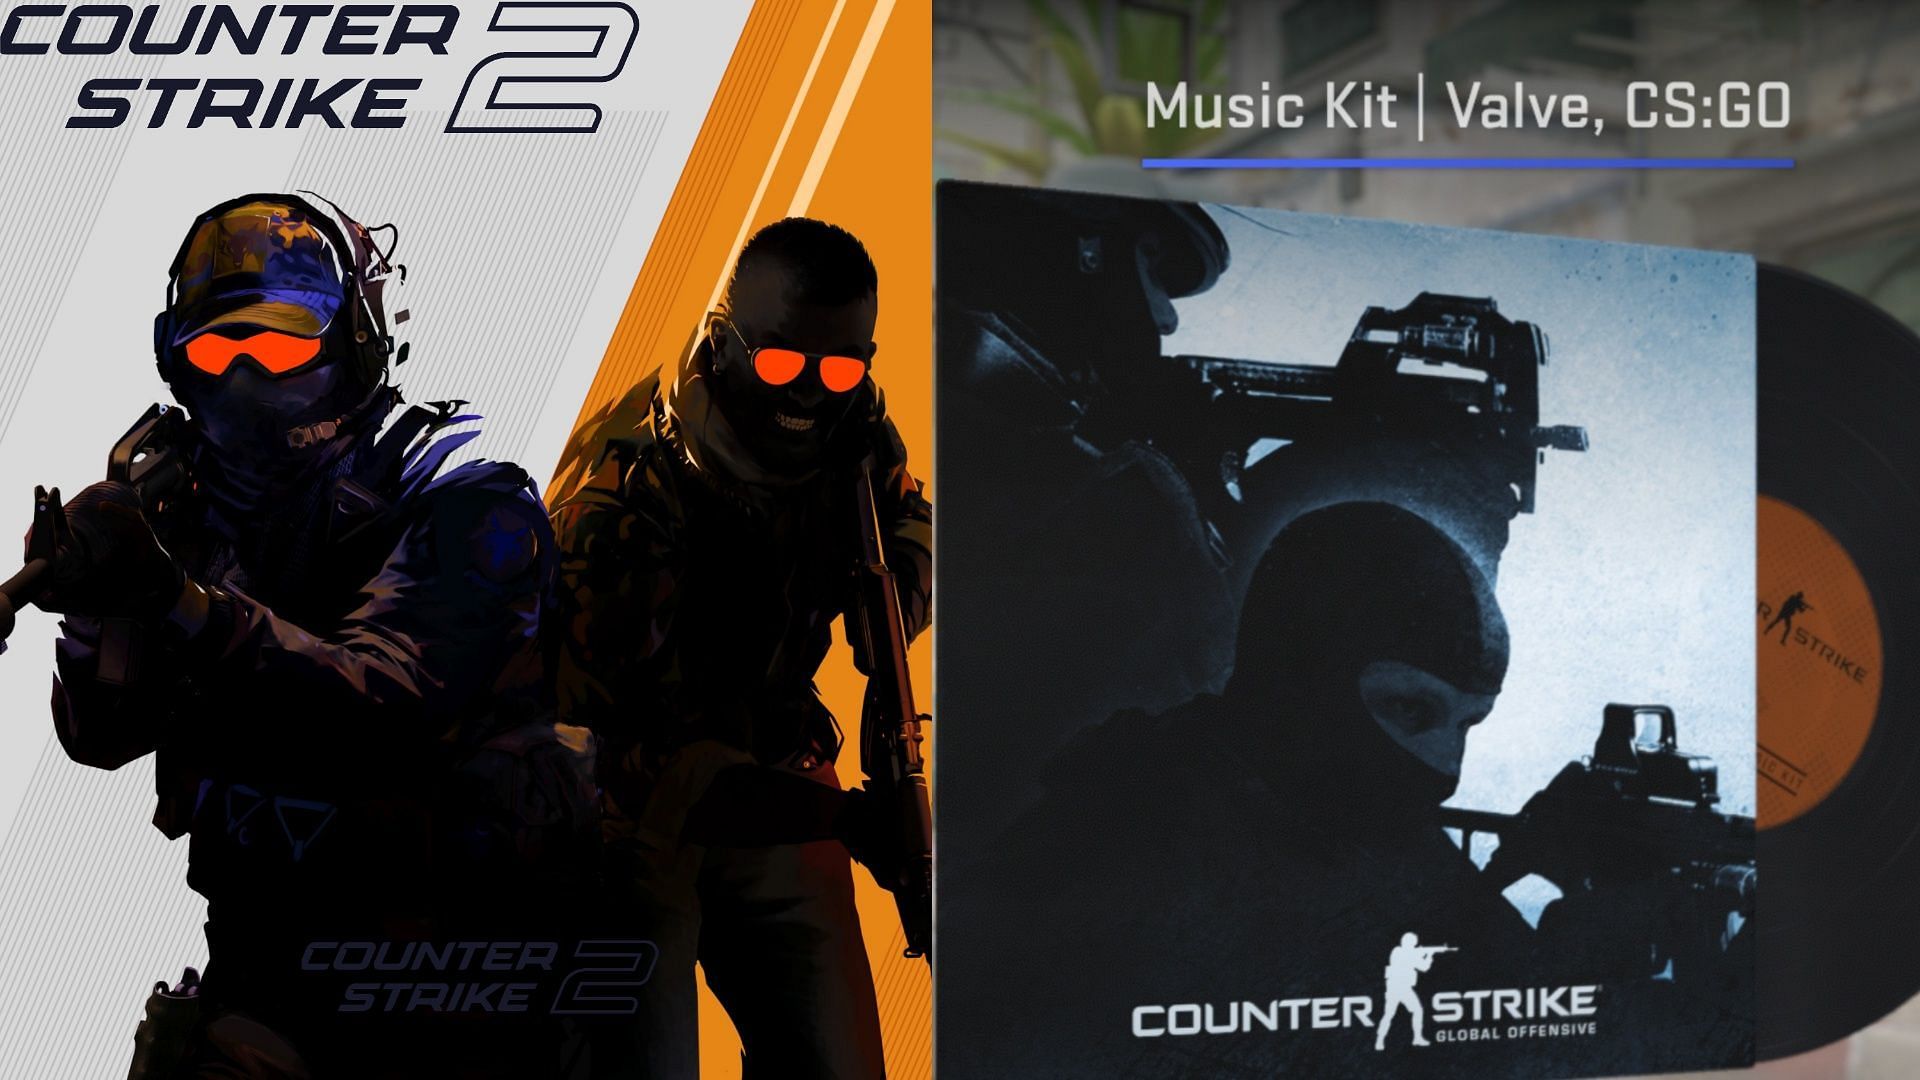 CS:GO Music Kit in Counter-Strike 2 (Image via Valve)